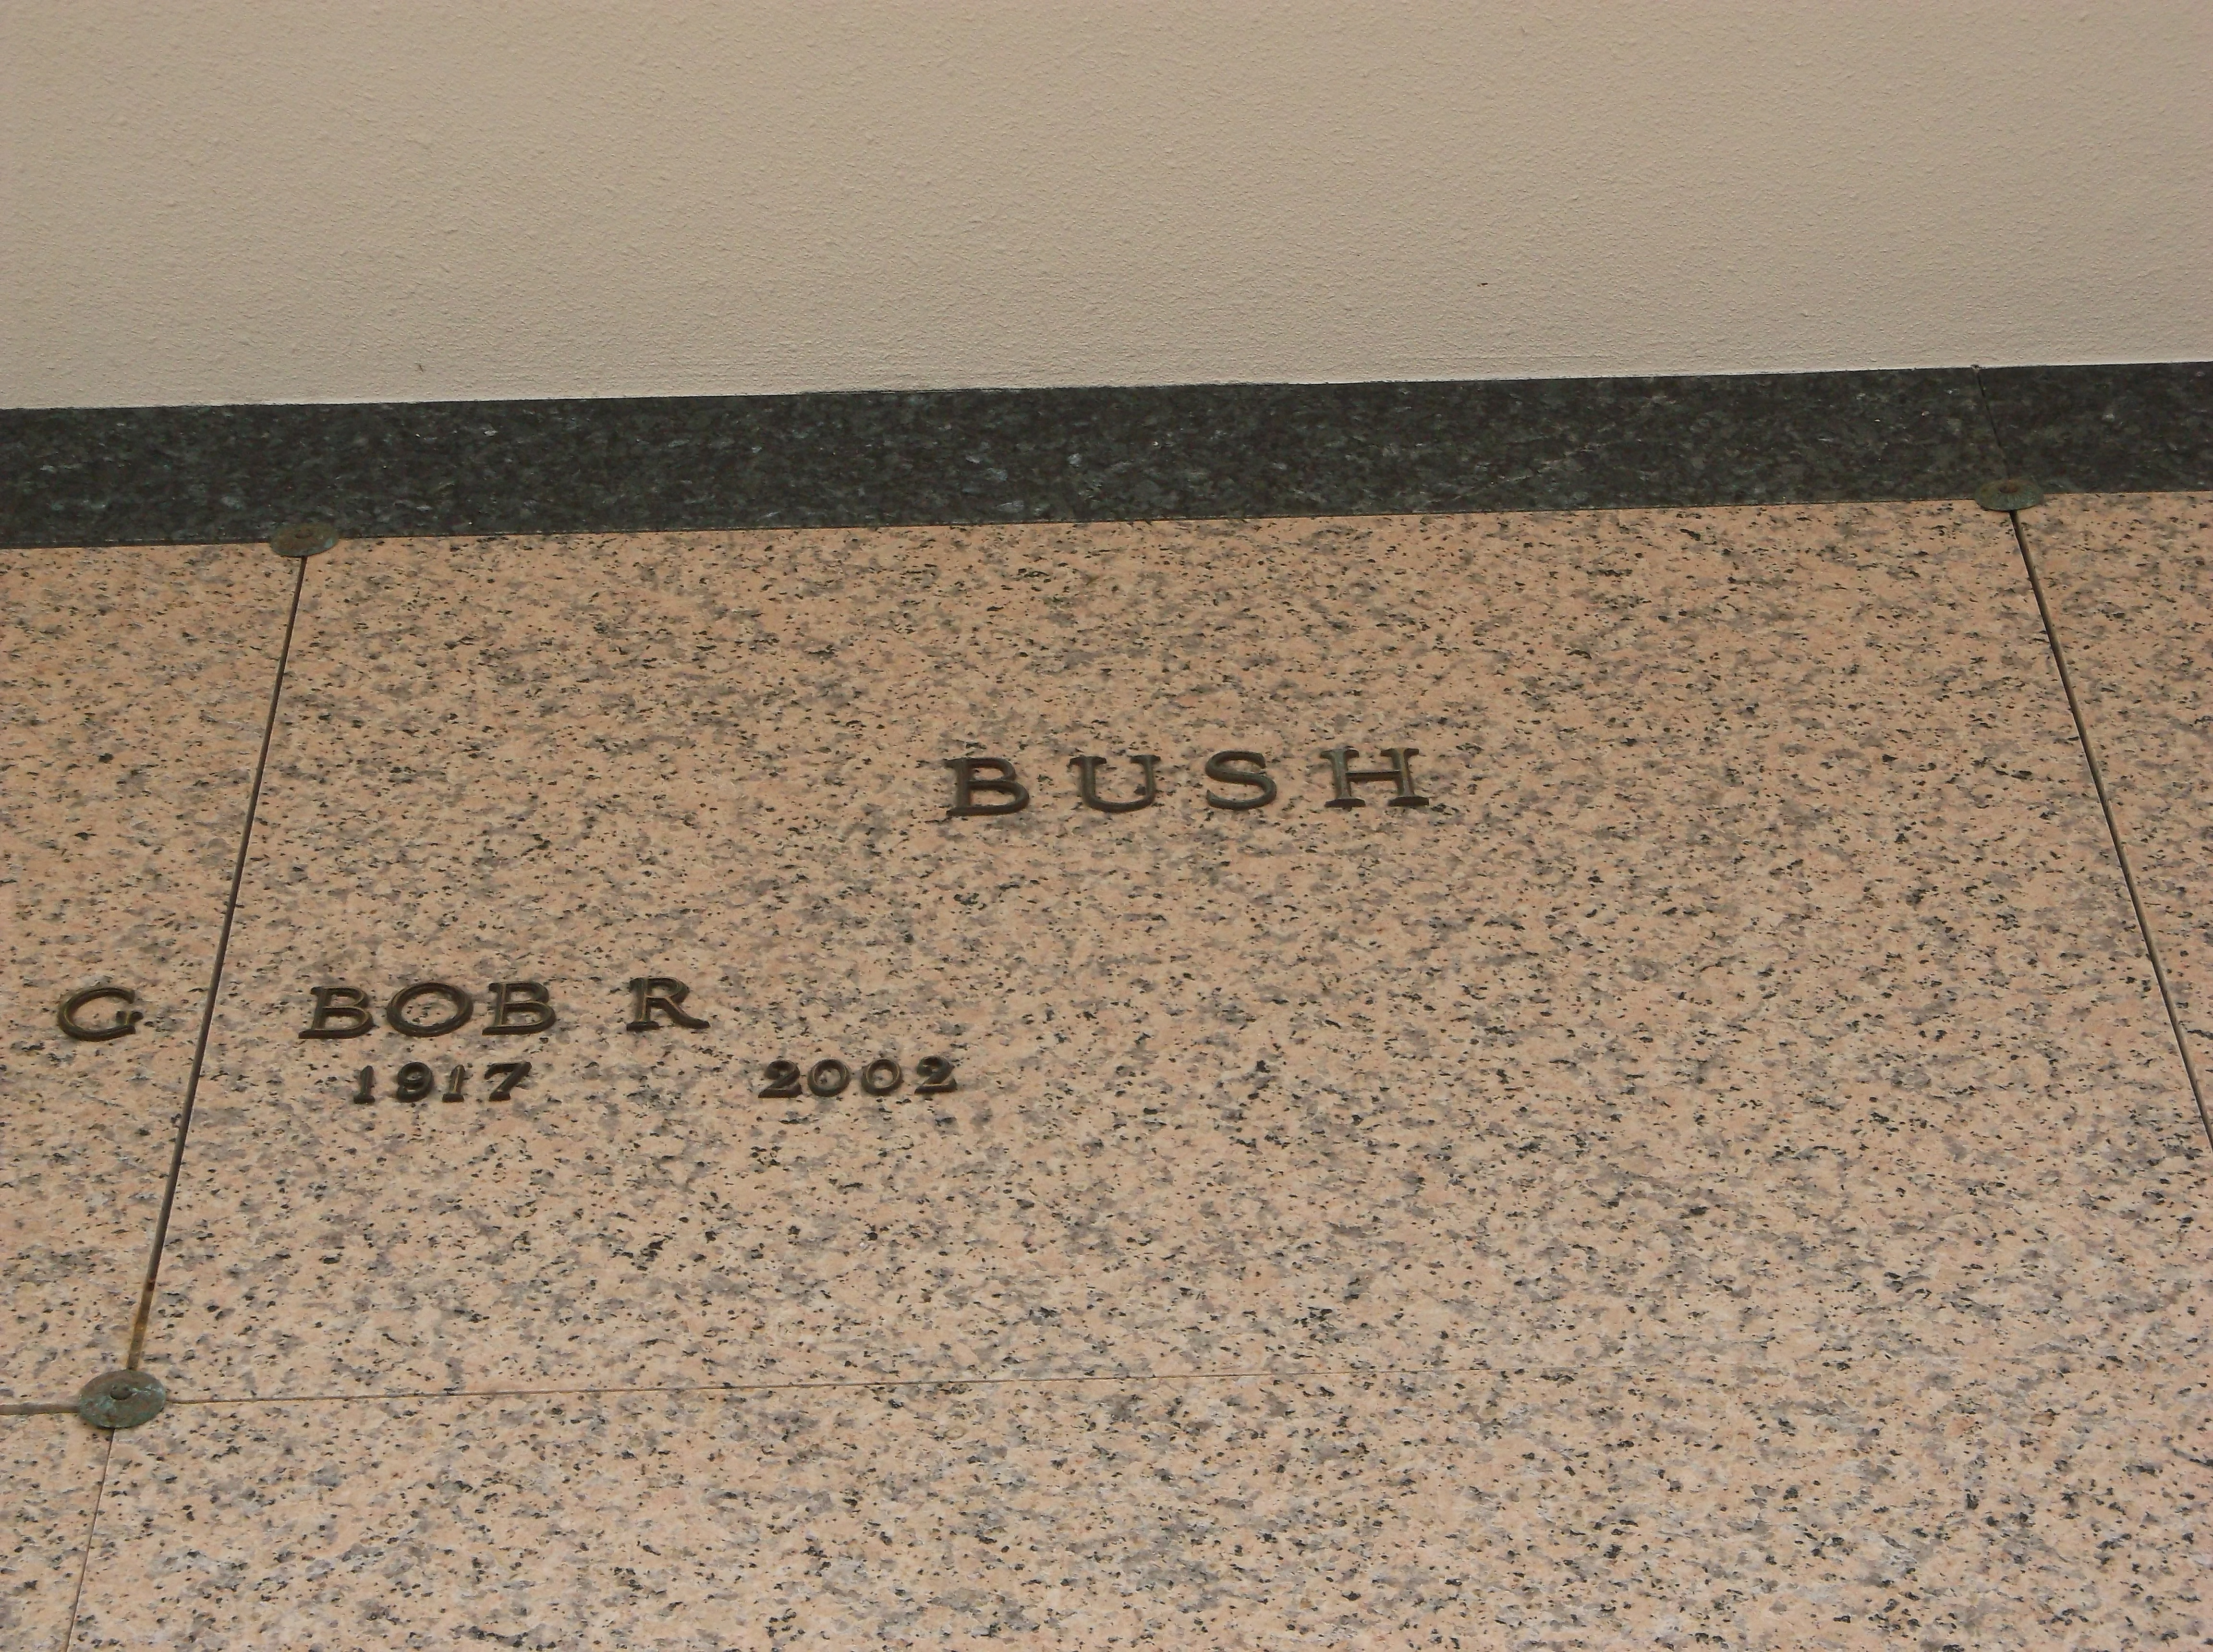 Bob R Bush